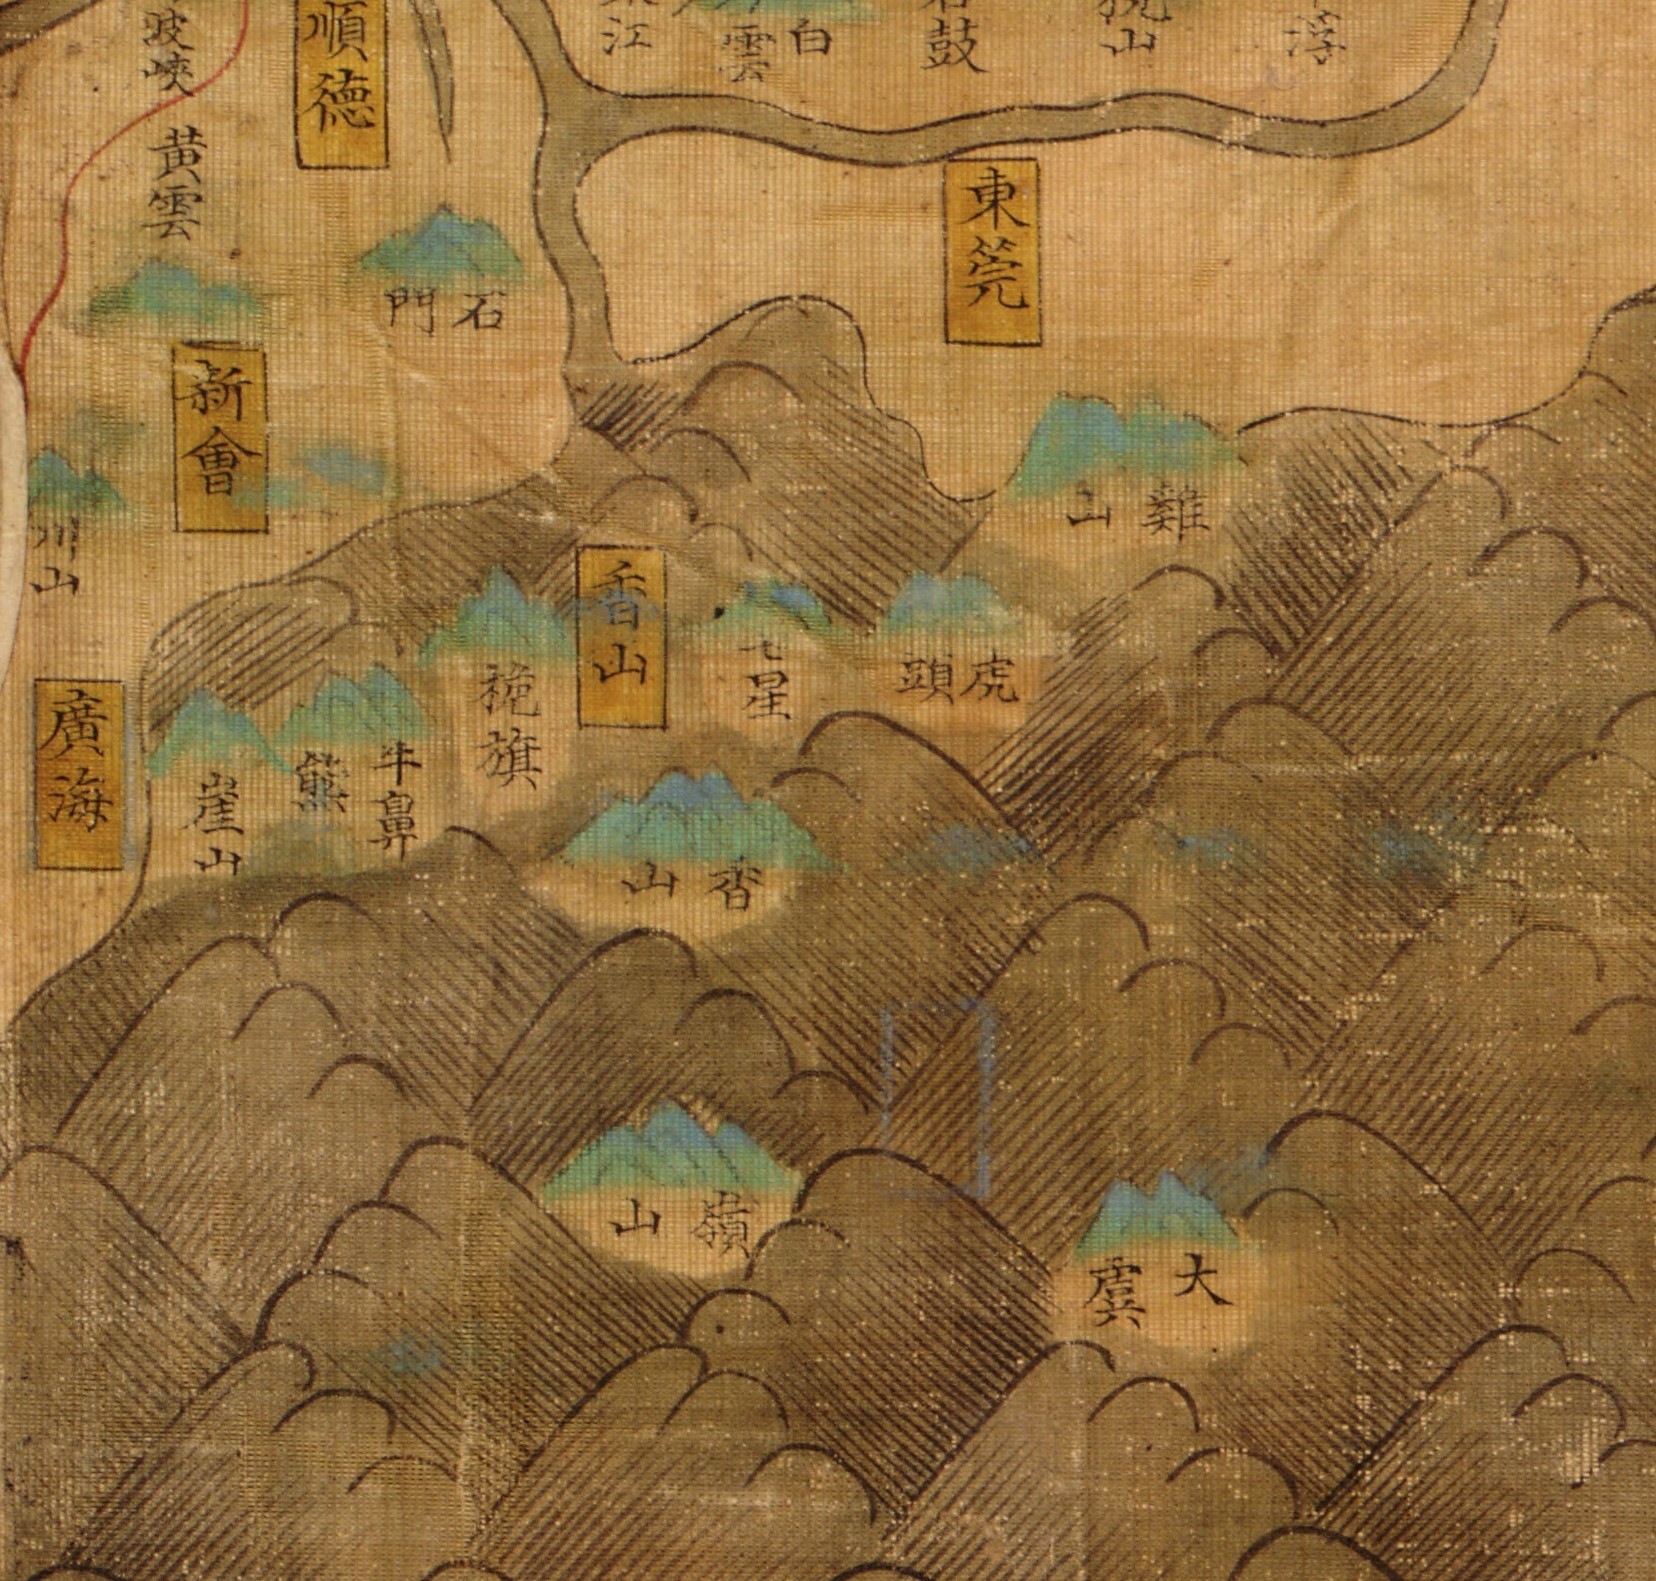 明嘉靖二十四年至三十八年（1547–1559）《大明輿地圖·廣東輿圖》中，大嶼山就被標記為大虞，為唯一出現在該圖中的香港地區地名。（圖片來源：美國國會圖書館）